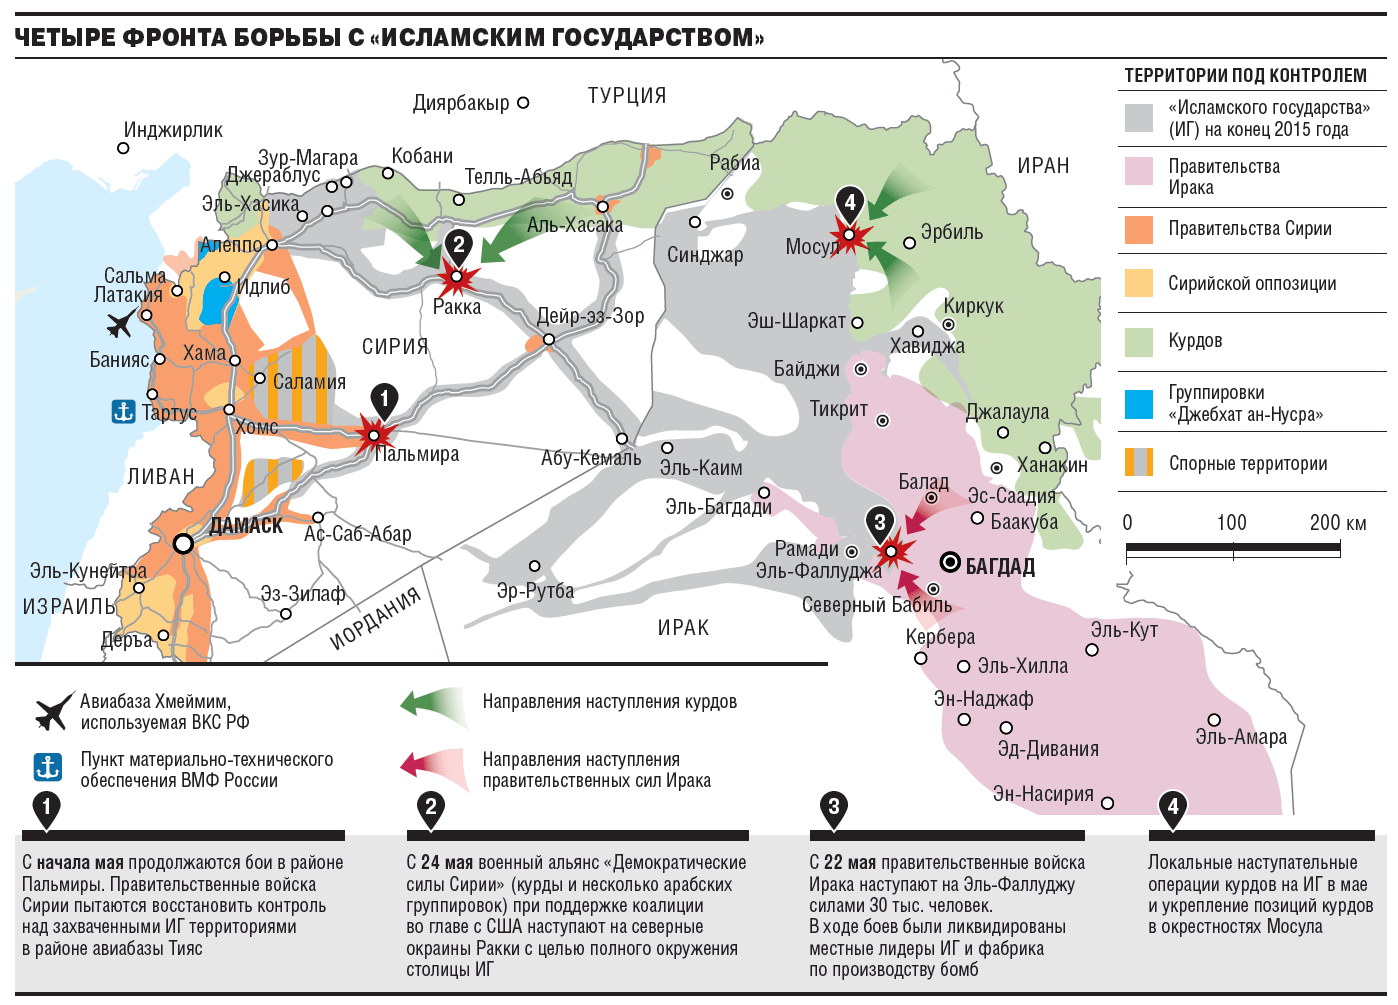 Анализ военных операций. Карта боевых действий США В Ираке. Карта боевых действий Сирии и Ирака.